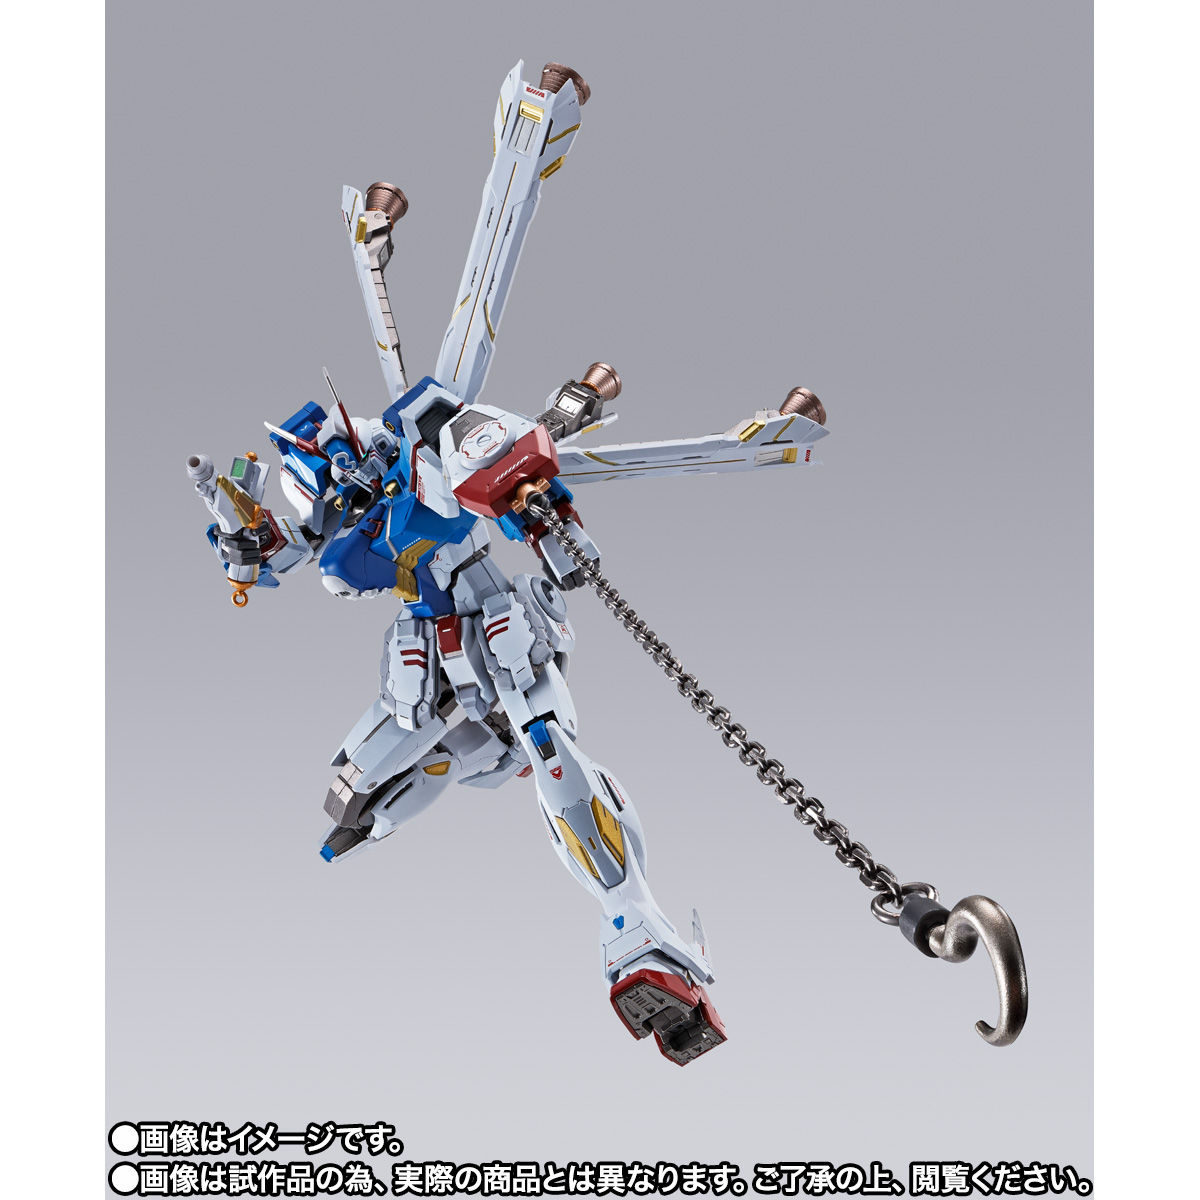 【限定販売】METAL BUILD『クロスボーン・ガンダムX3』機動戦士クロスボーン・ガンダム 可動フィギュア-005